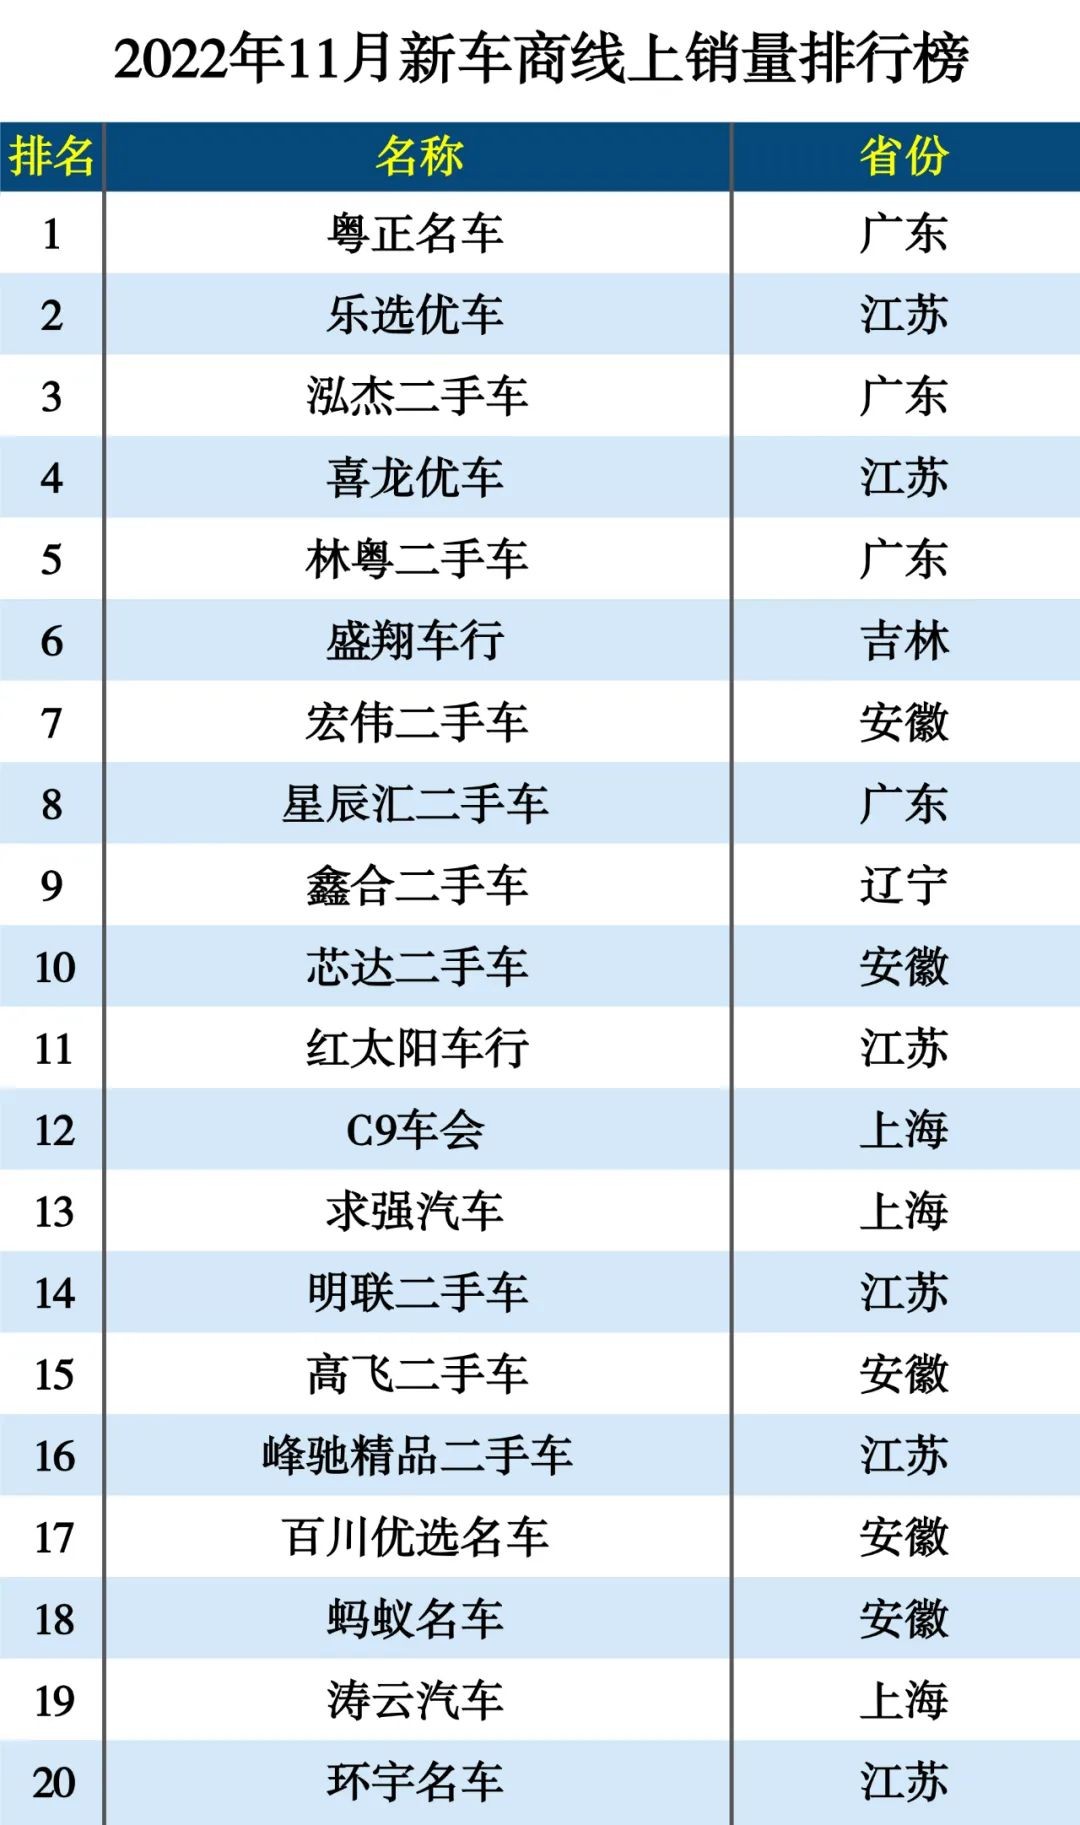 瓜子最新发布：二手车遇下半年最大降幅 苏州线上反超北京居全国第一